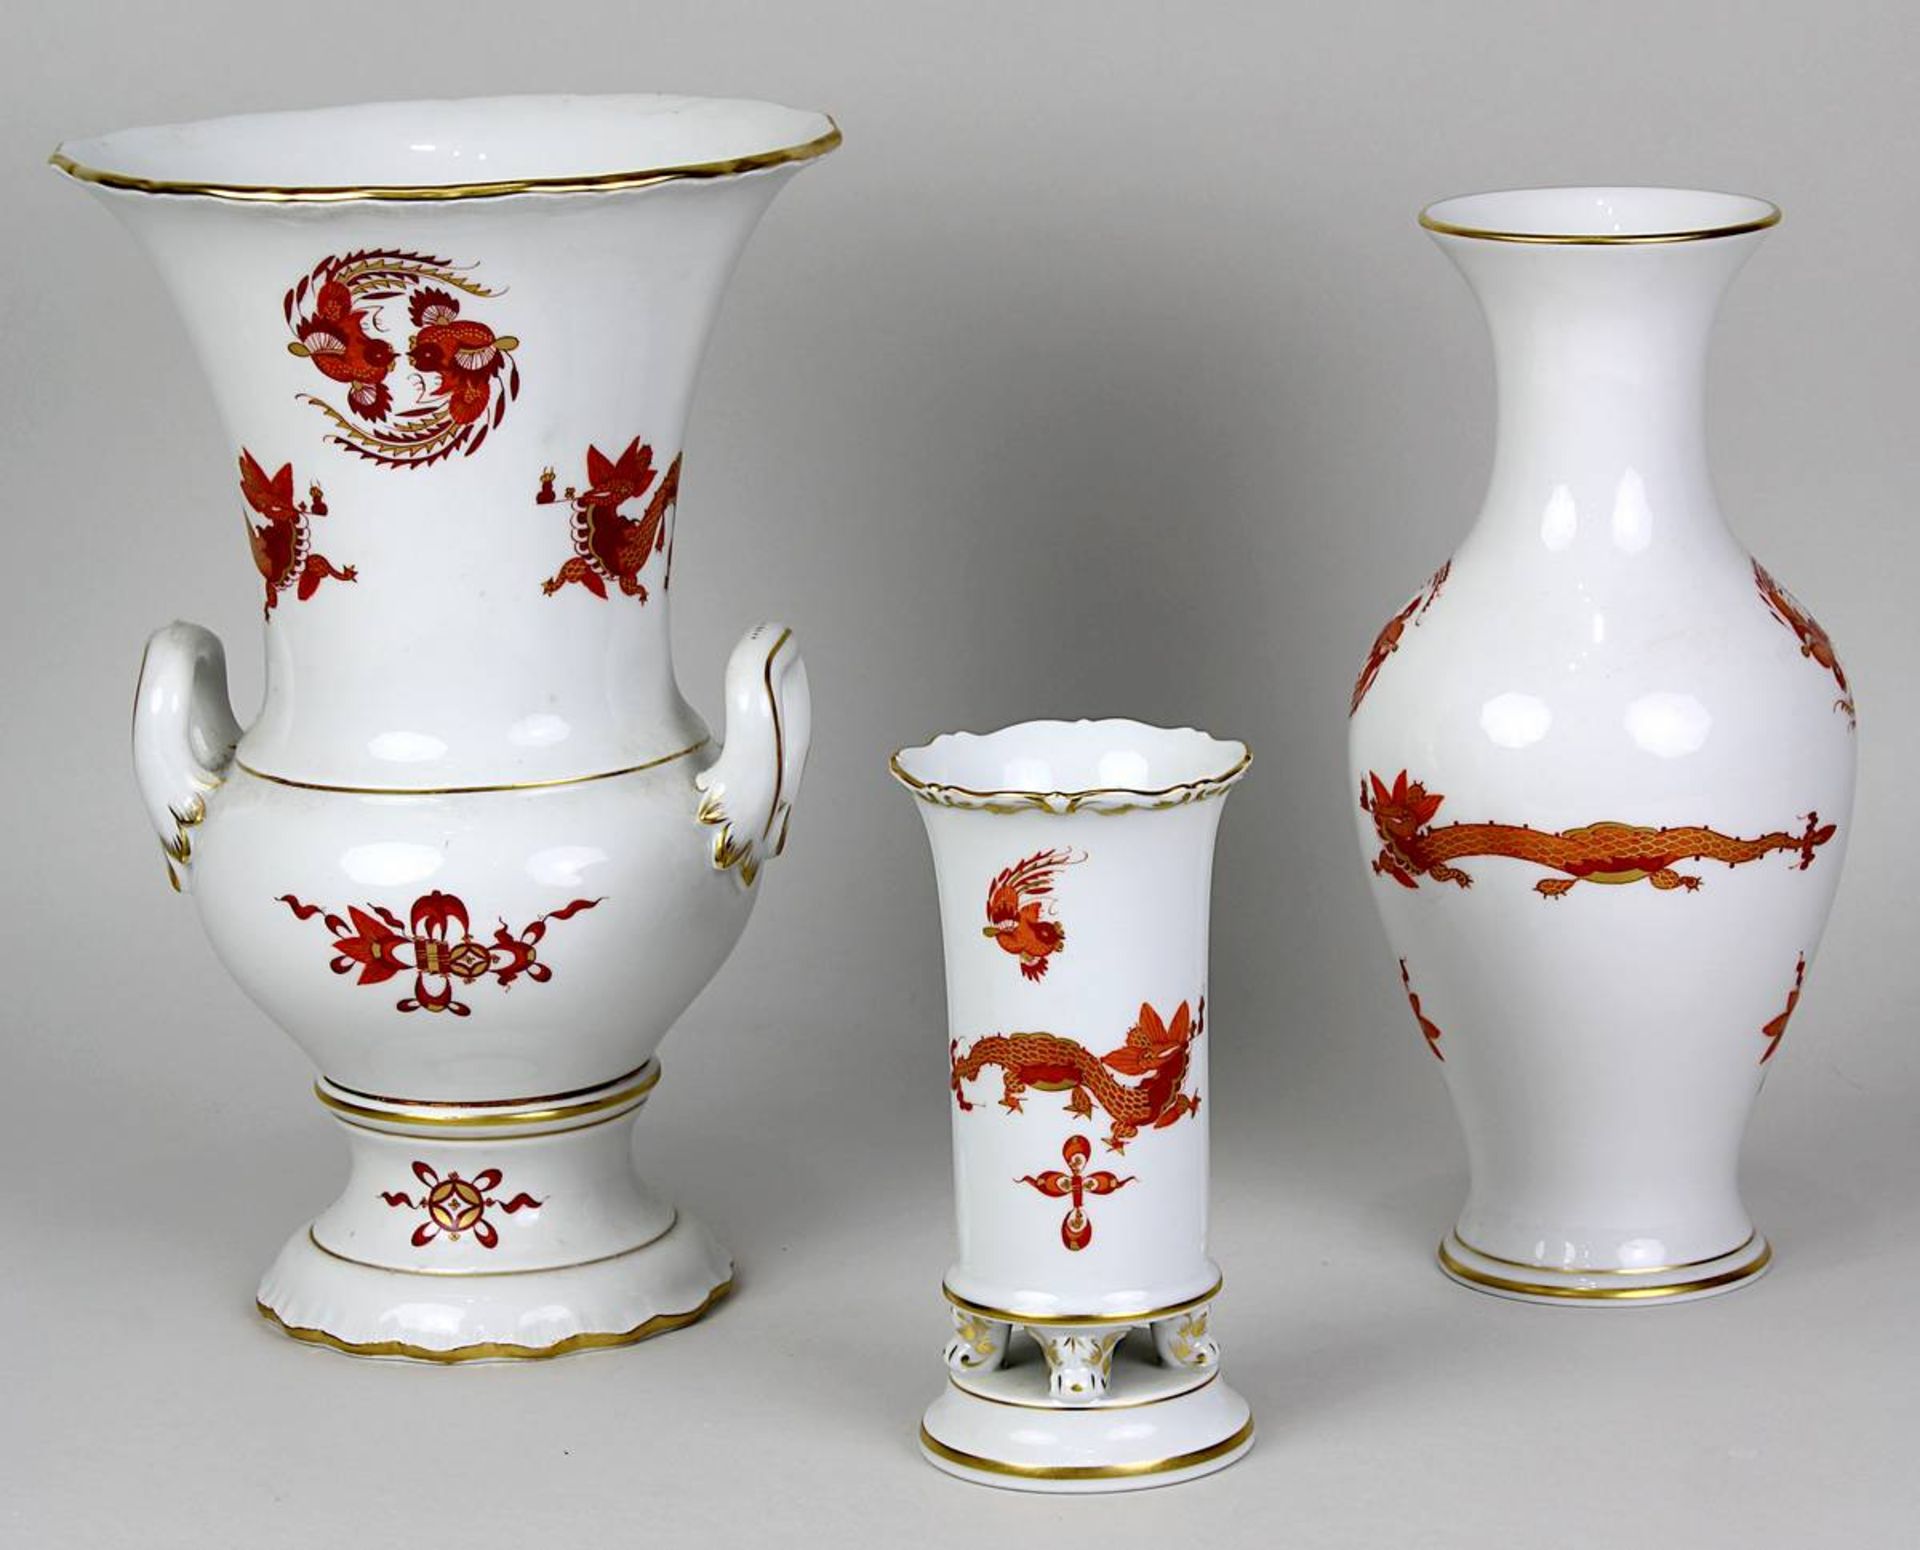 Drei Vasen, Meissen 2. H. 20. Jh., Dekor roter Drache mit Goldrändern, purpur u. gold staffiert: - Image 3 of 5